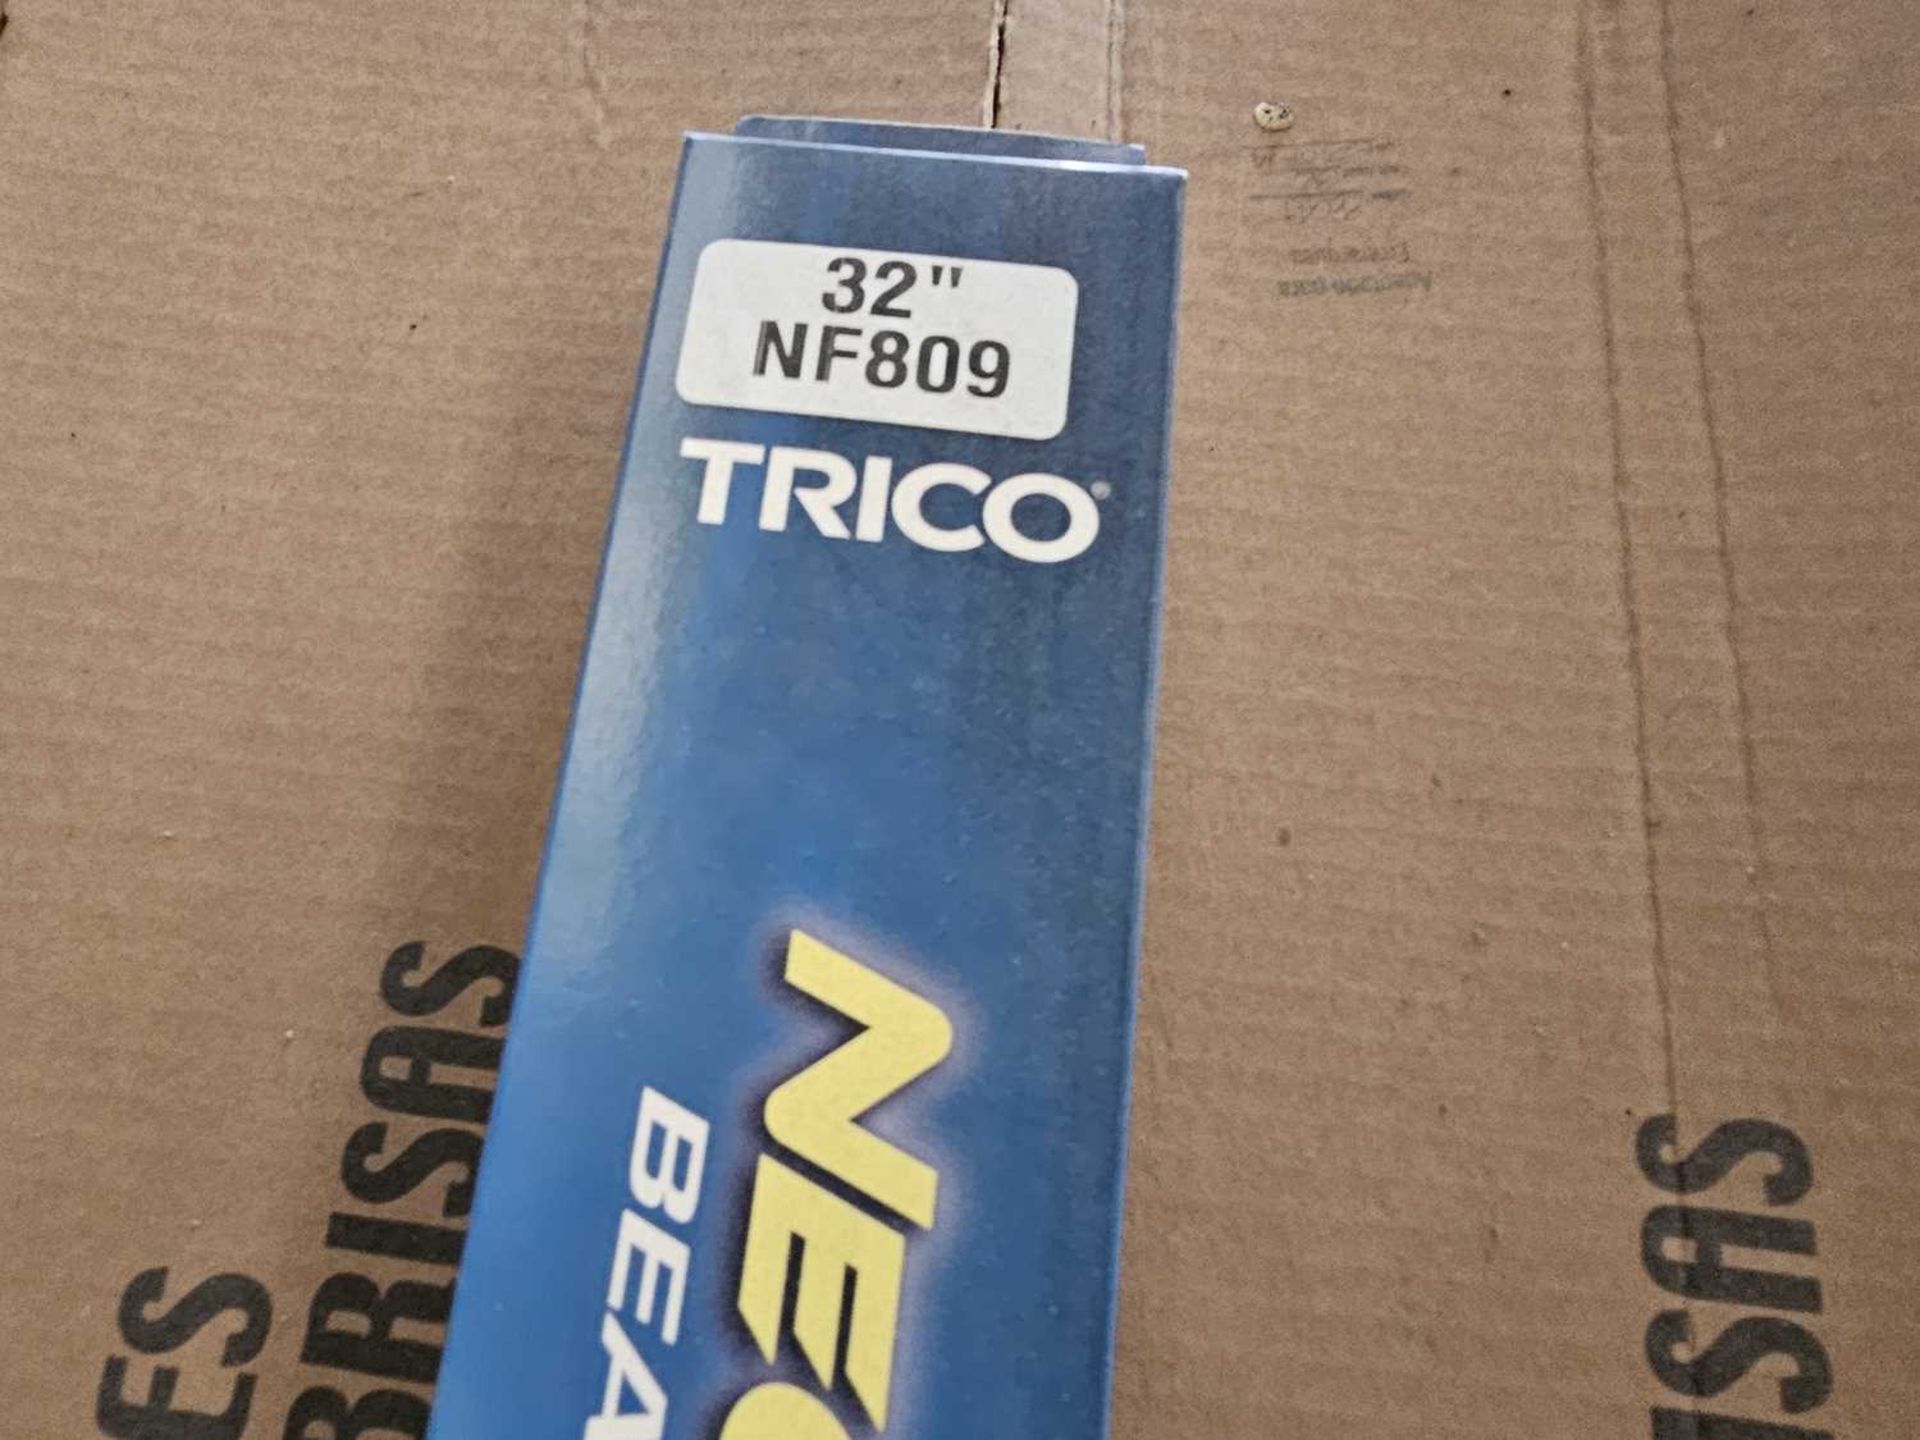 Unused Pallet of Trico NF809 Window Wiper (32") - Bild 2 aus 3